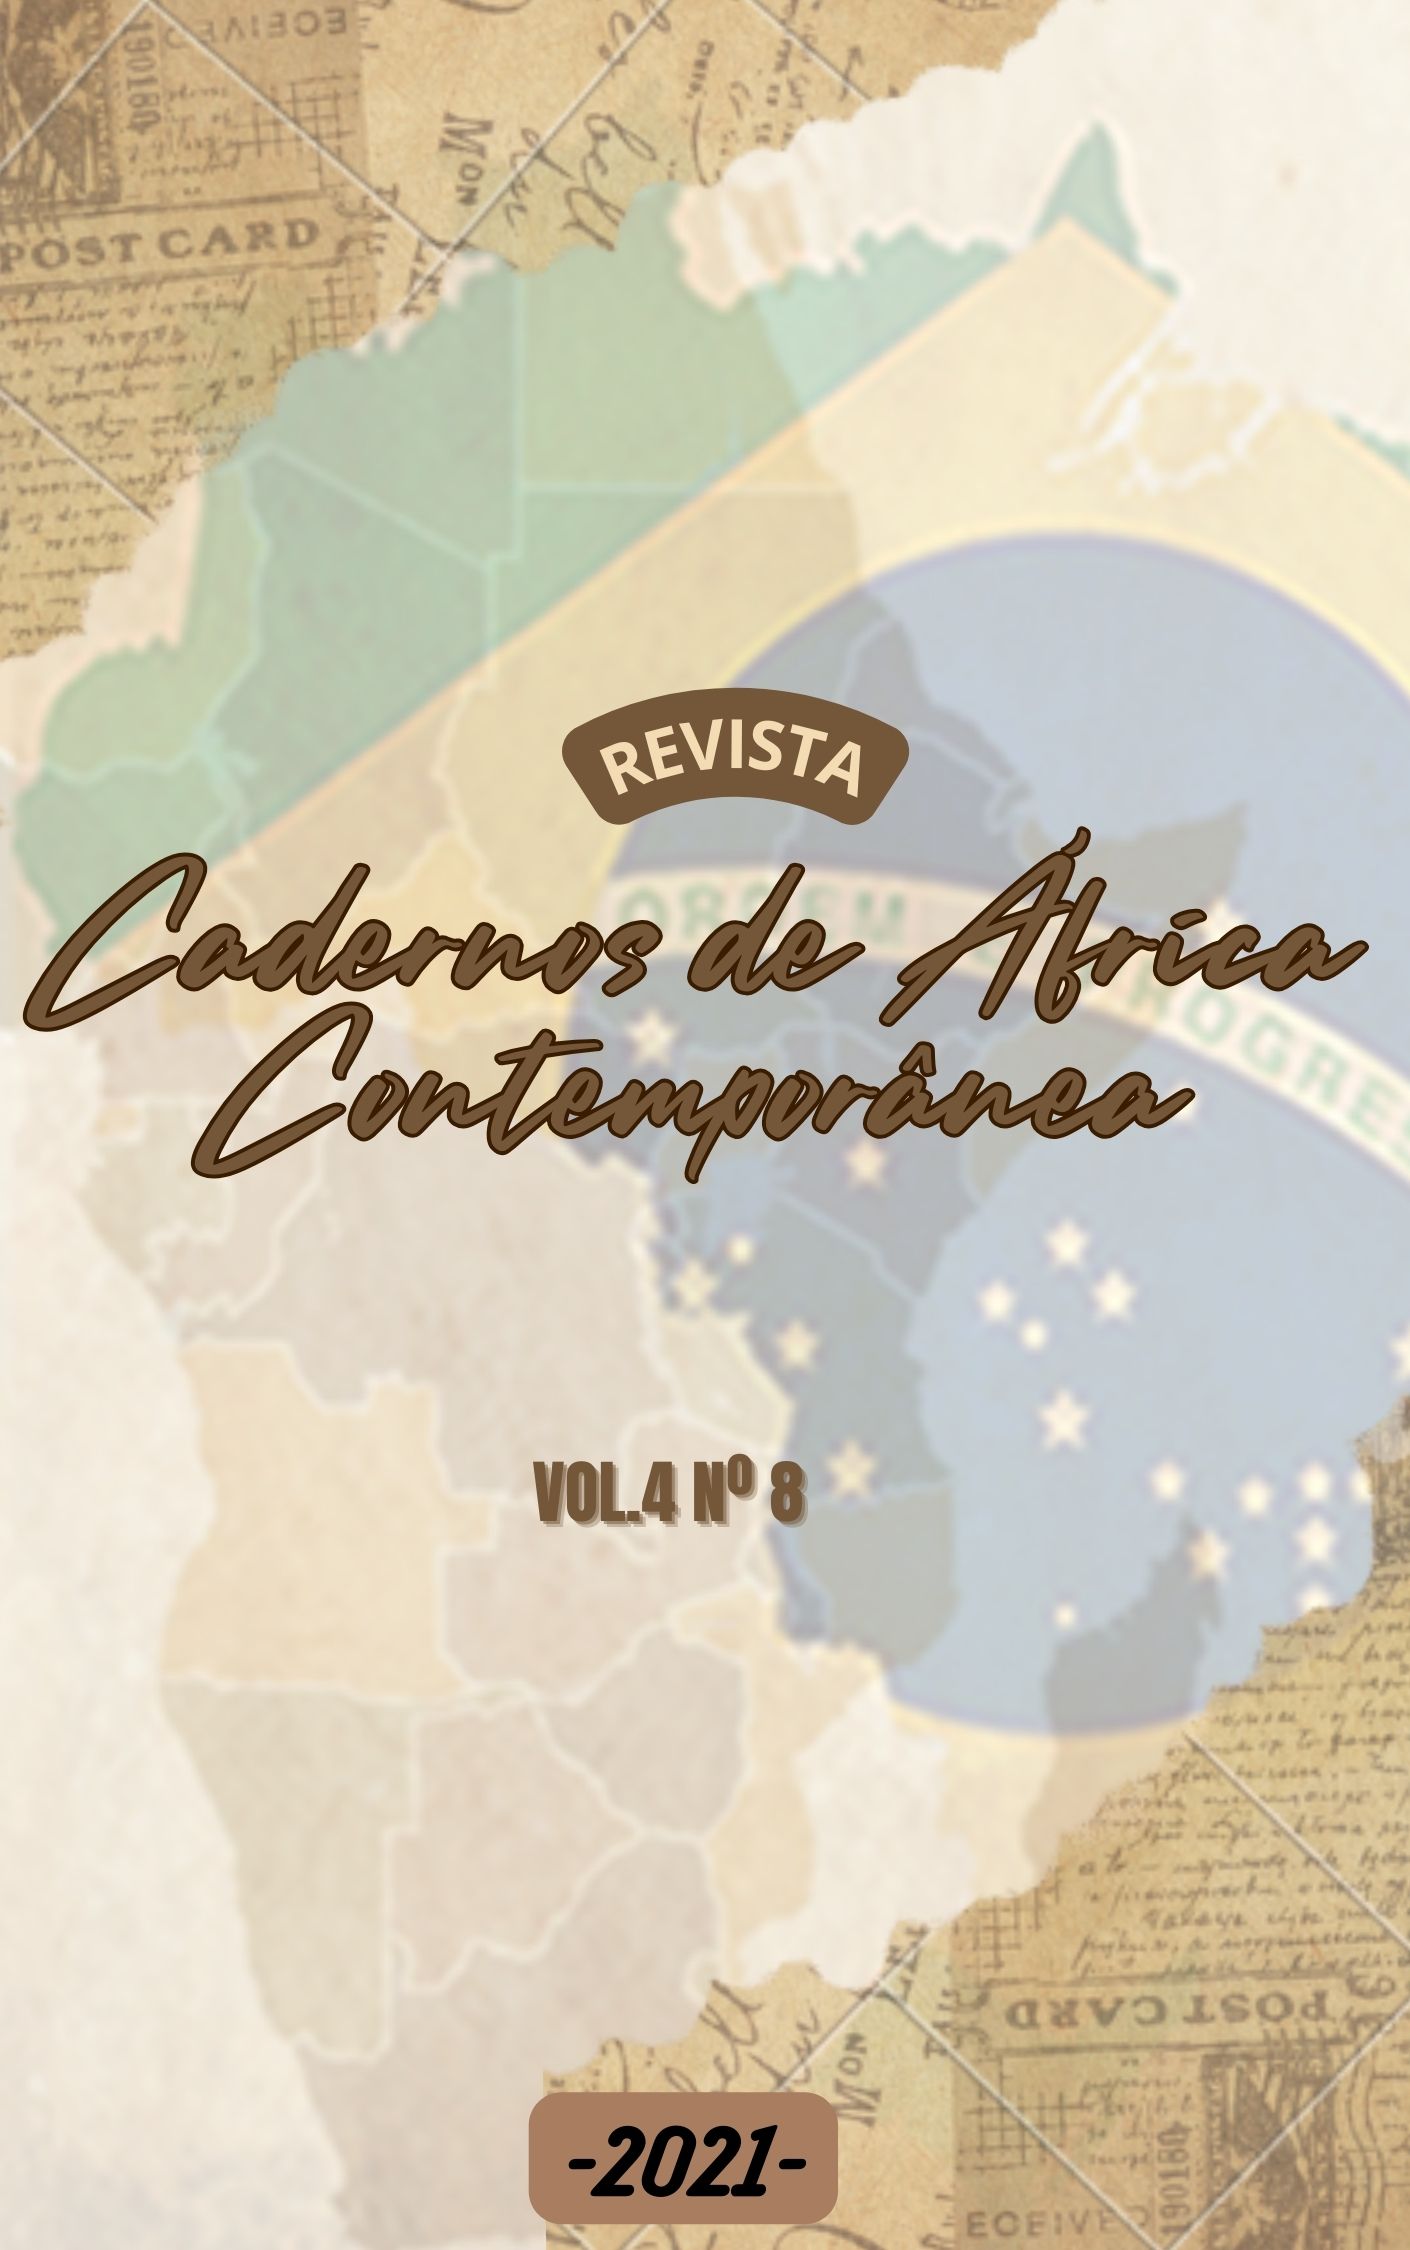 					Afficher Vol. 4 No. 8 (2021): Cadernos de África Contemporânea
				